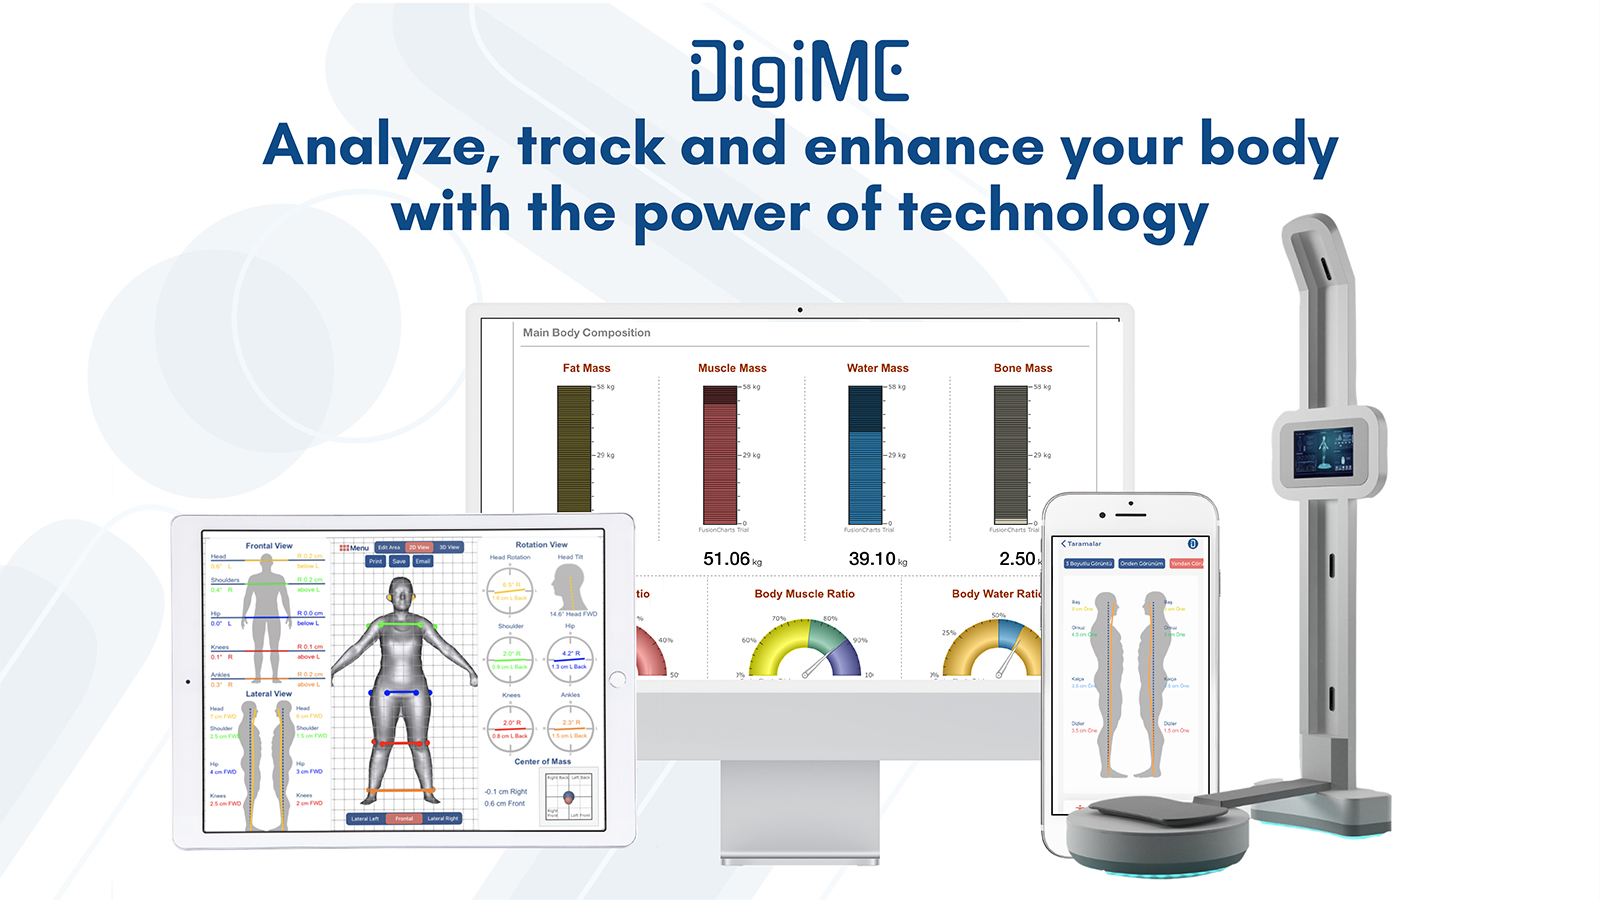 Yapay zeka kullanarak yüksek hassasiyet oranıyla vücut ve postür analizi yapan DigiME 715 Bin Dolar yatırım aldı.